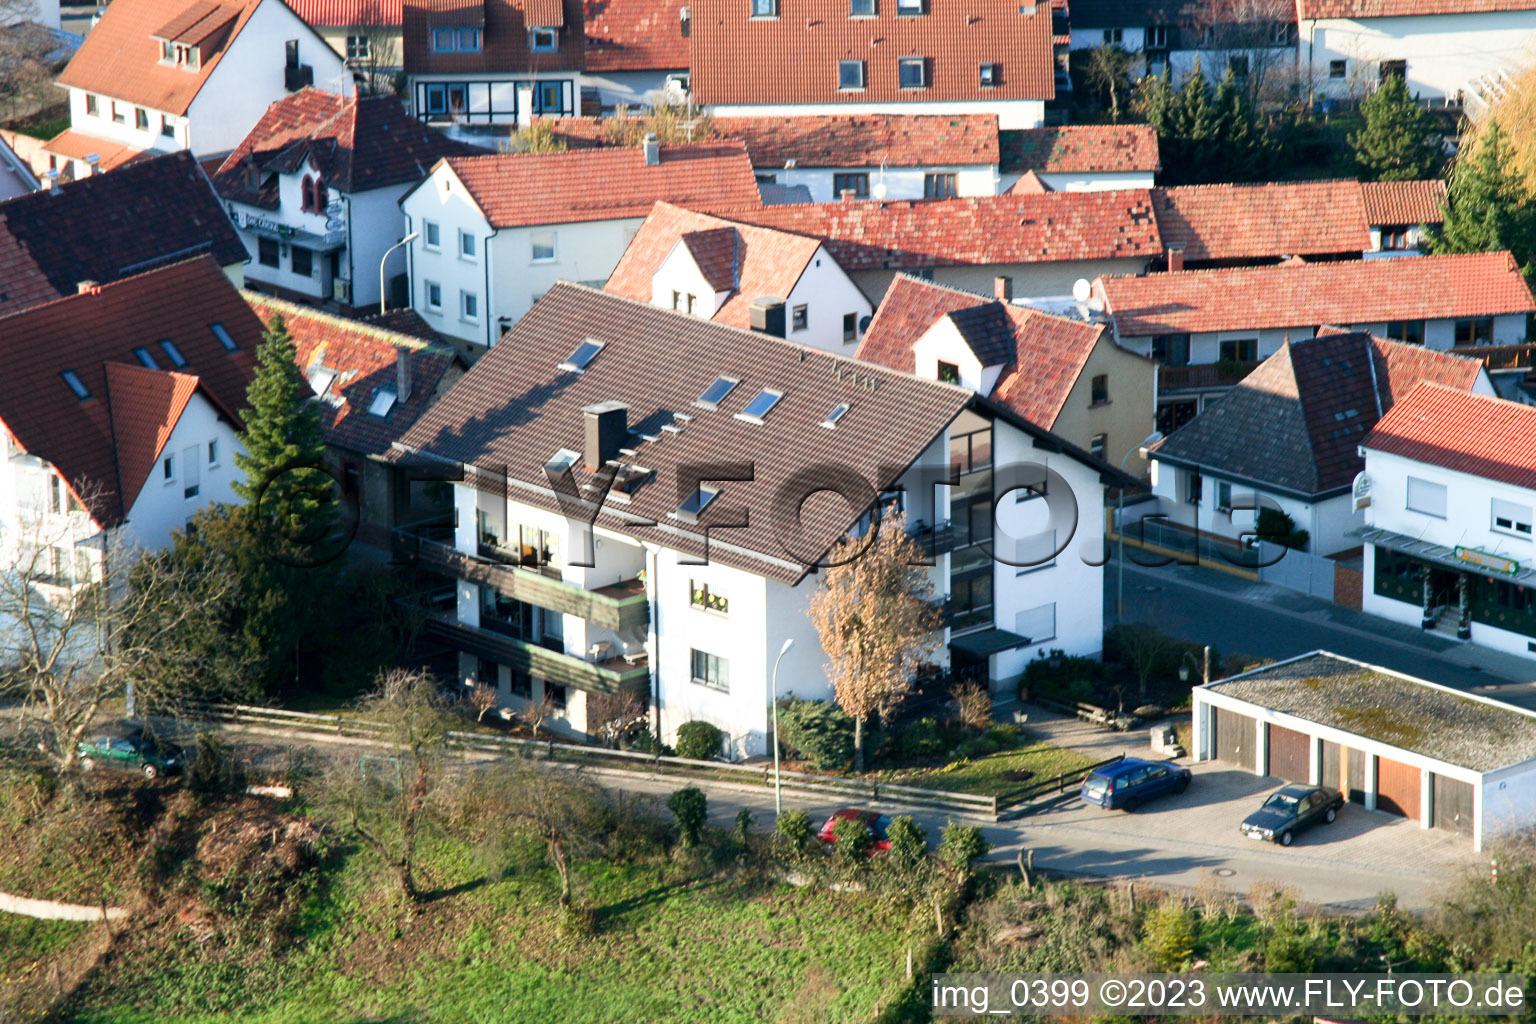 Drohnenbild von Jockgrim Bahnhofstr im Bundesland Rheinland-Pfalz, Deutschland